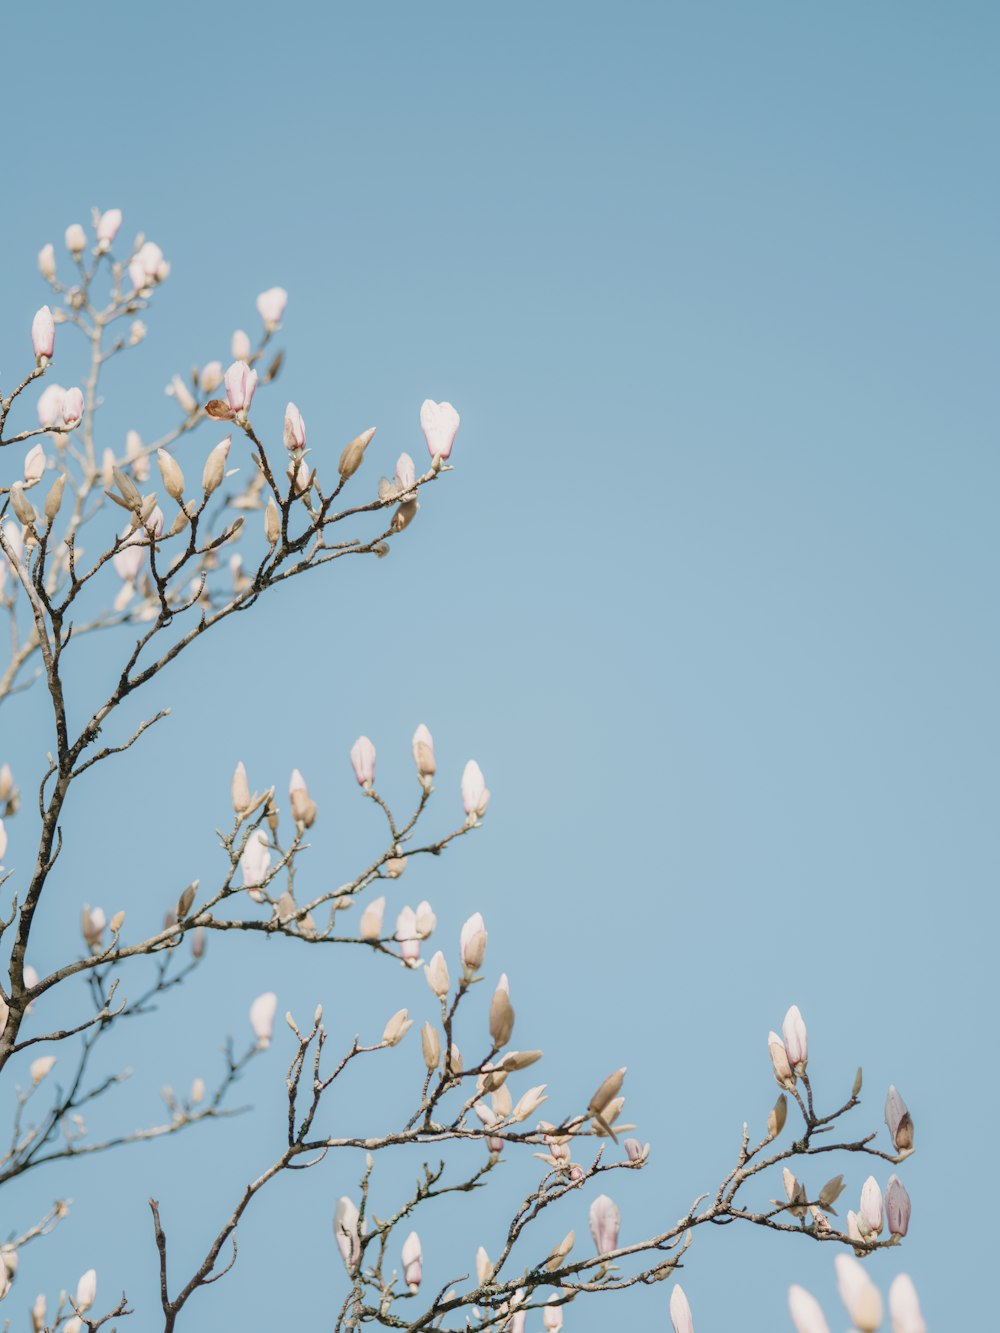 青空に白い花を咲かせる木